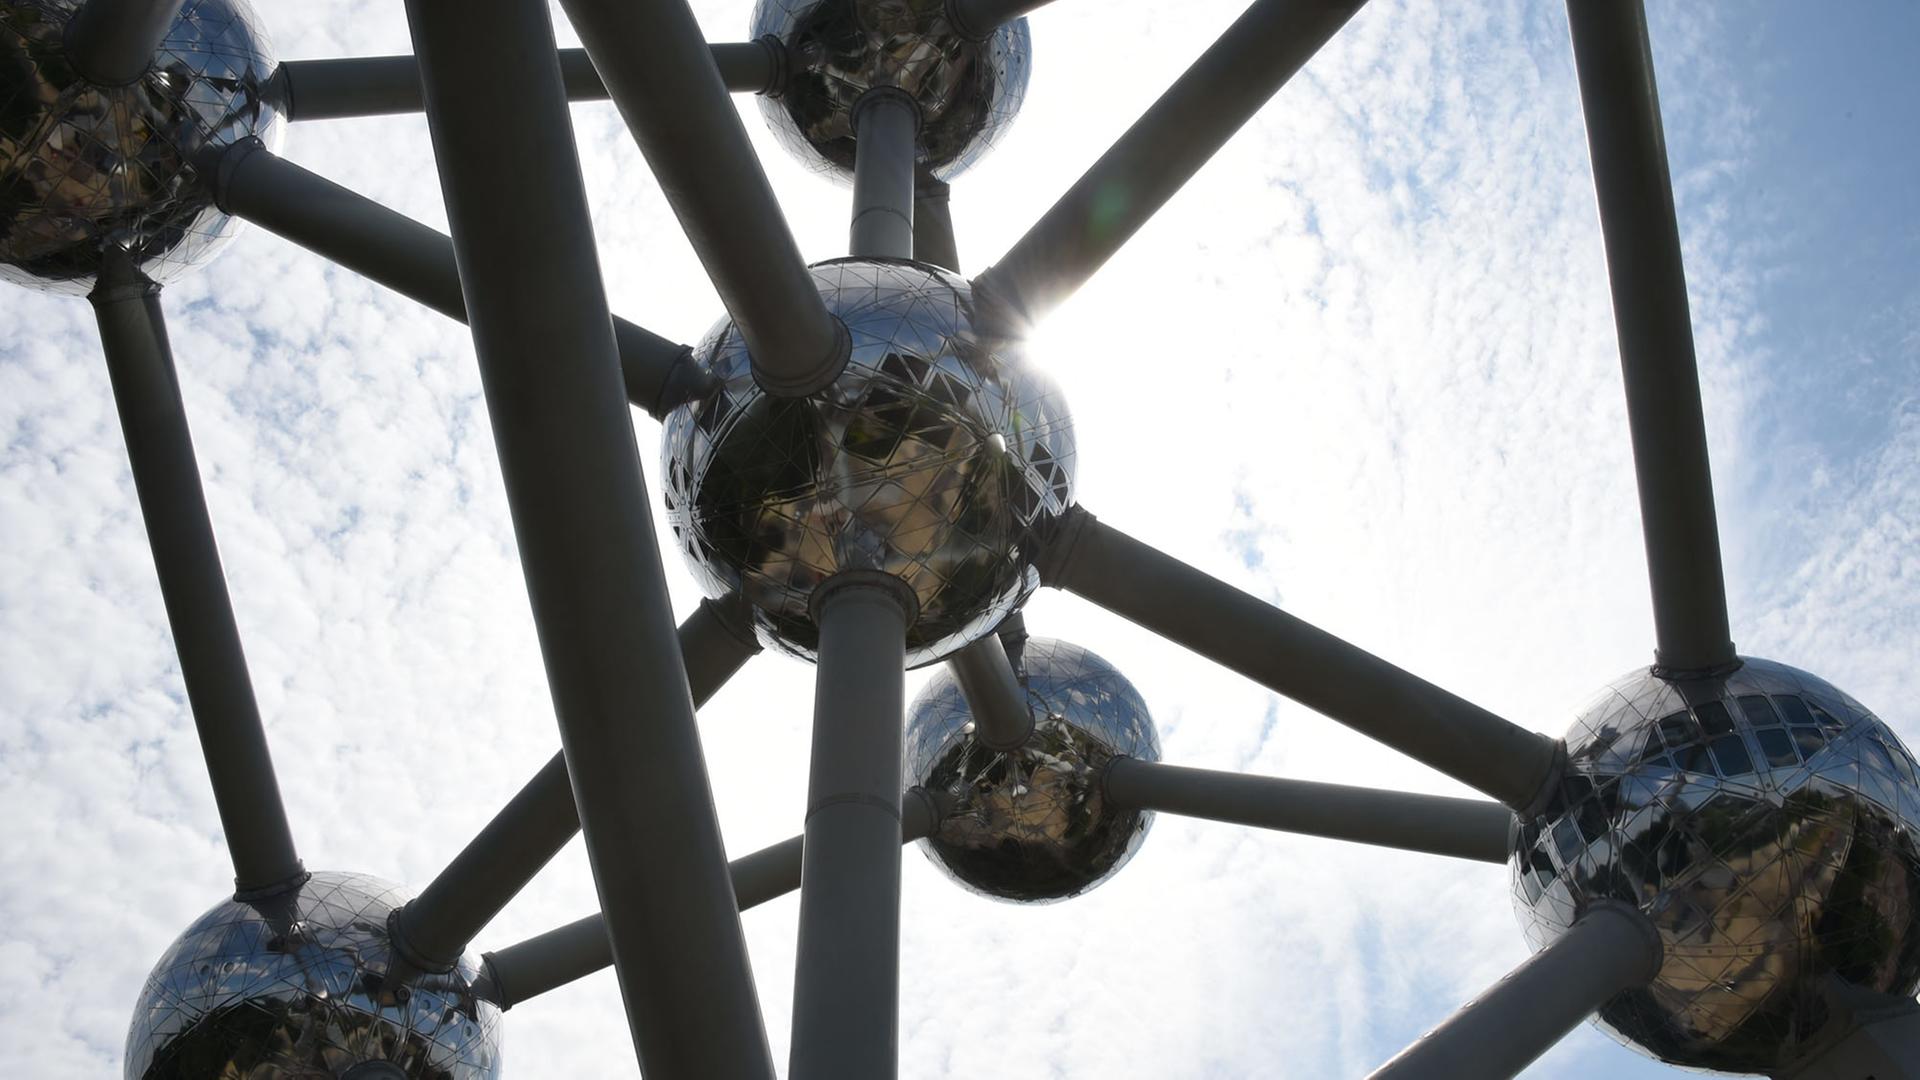 Das Atomium in Brüssel soll ein Atom symbolisieren: Es besteht aus kugelförmigen Räumen, die durch Streben verbunden sind.